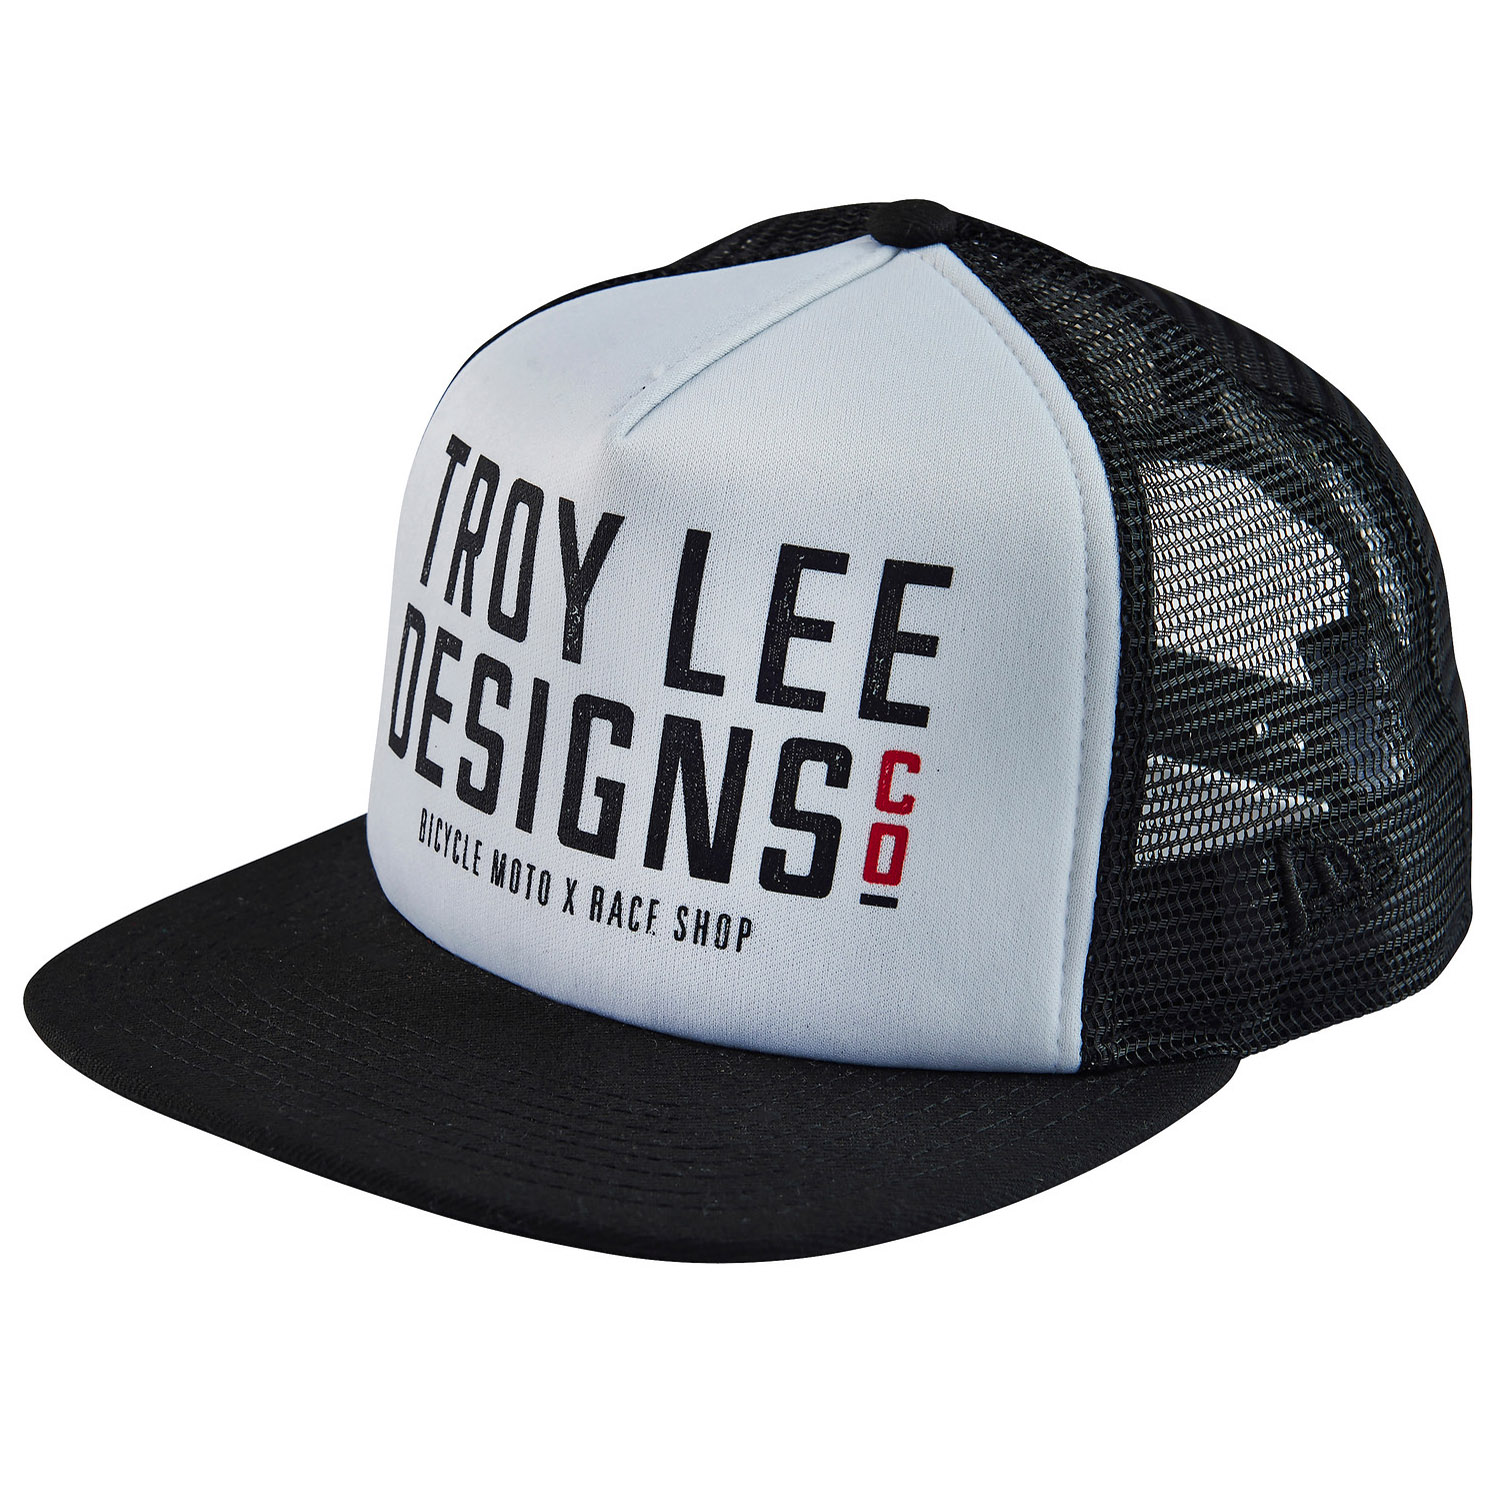 Troy Lee Designs Step Up Black